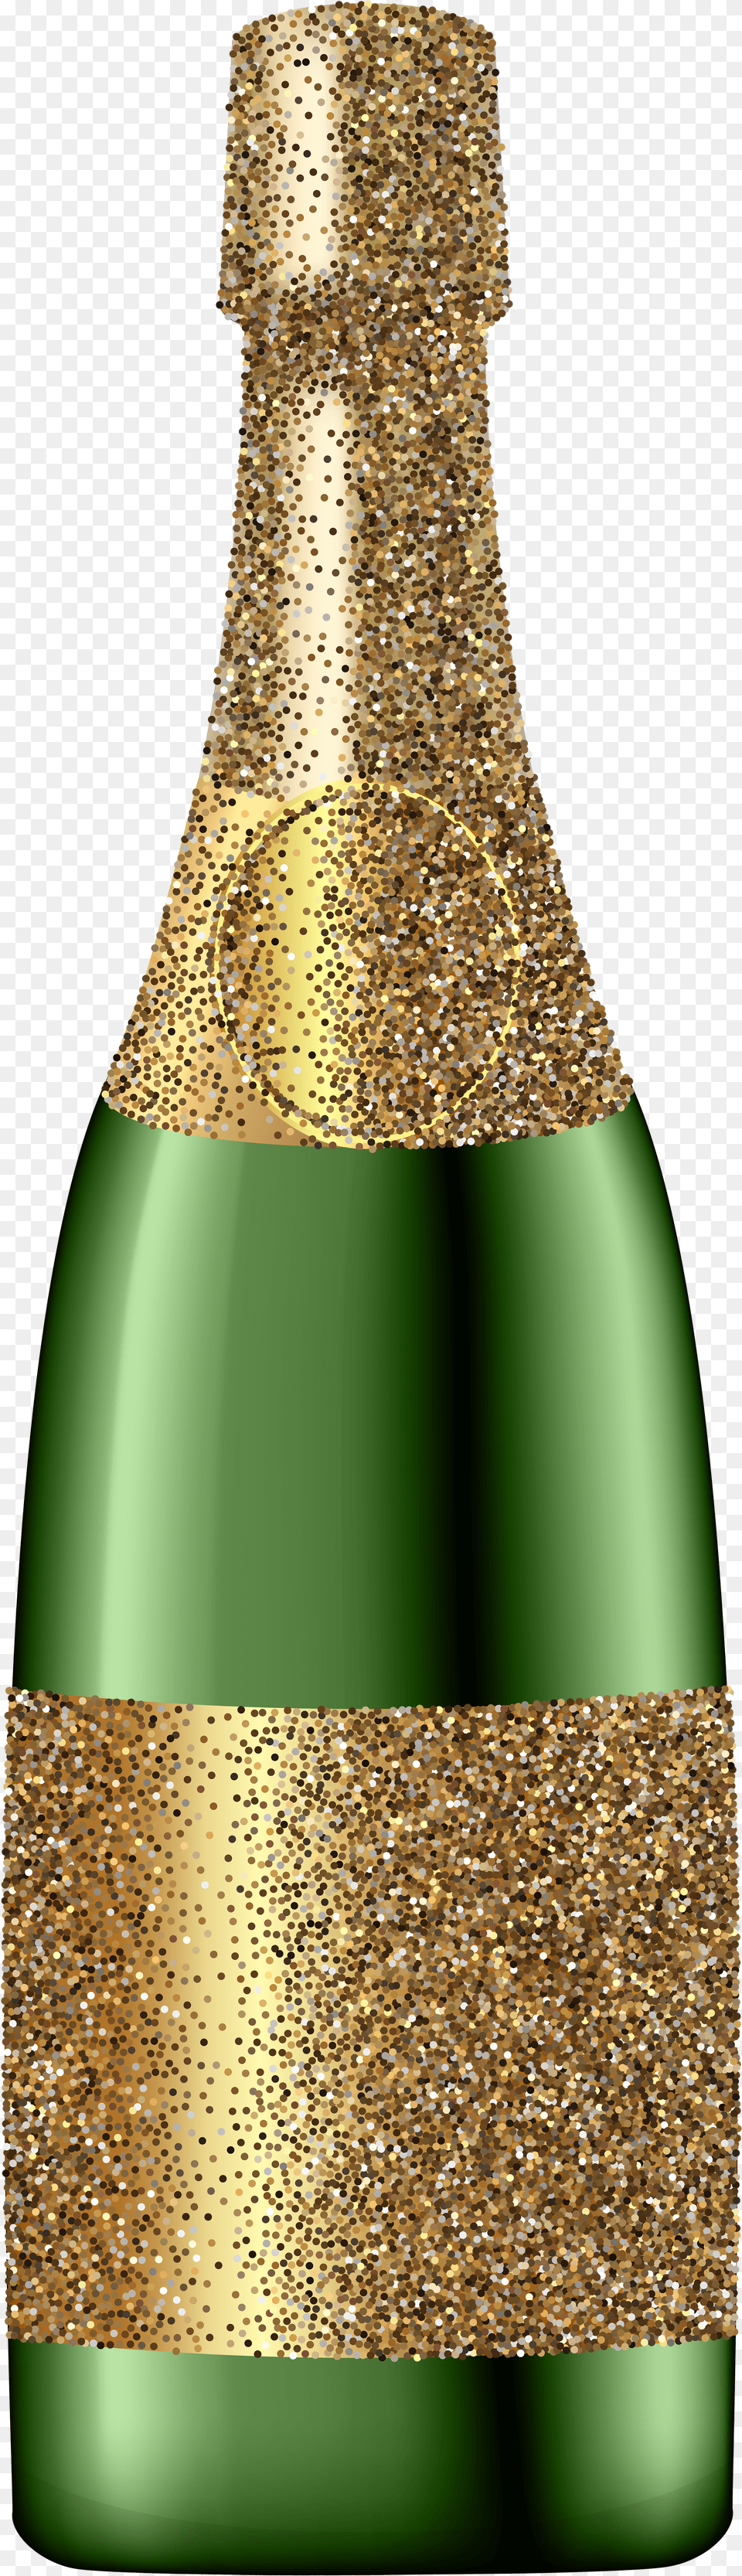 Champagne Bottle Clip Art Png Image